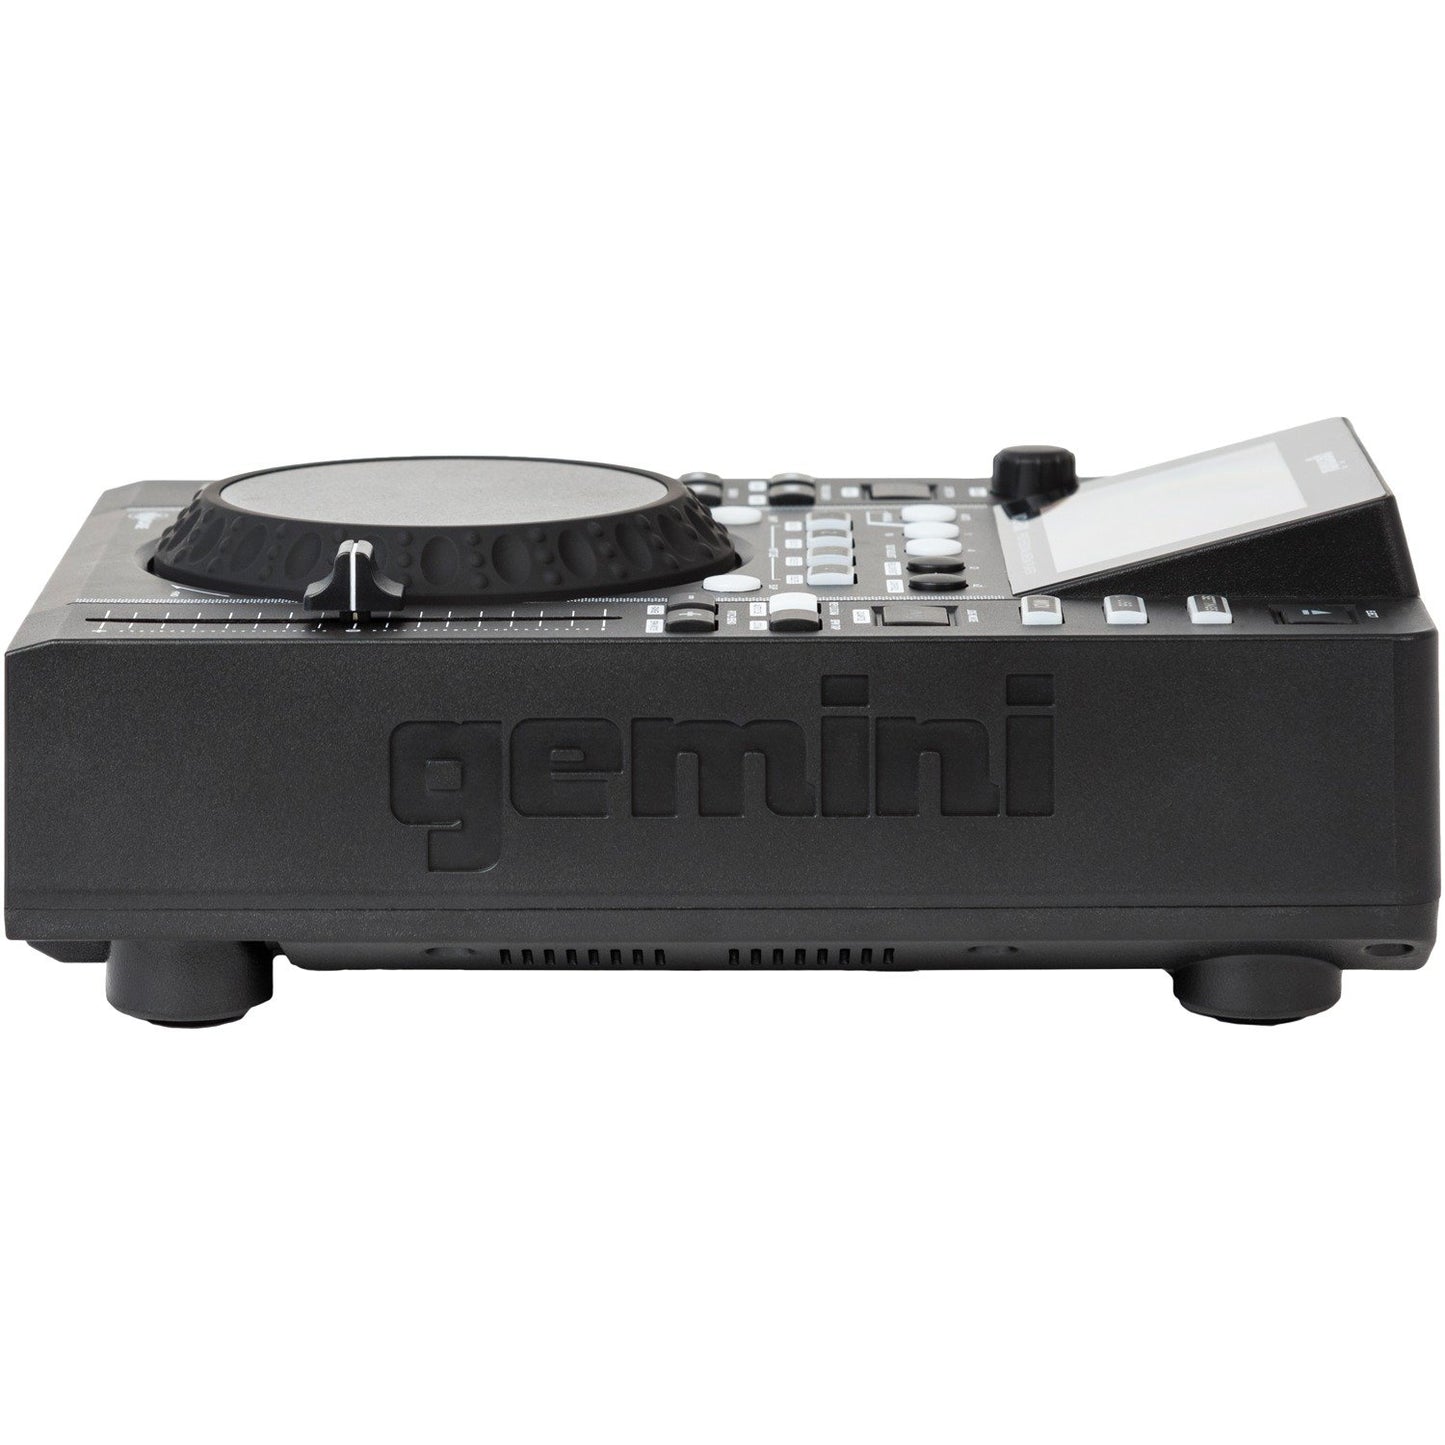 Gemini MDJ-500 MDJ-500 Professional USB Media Player